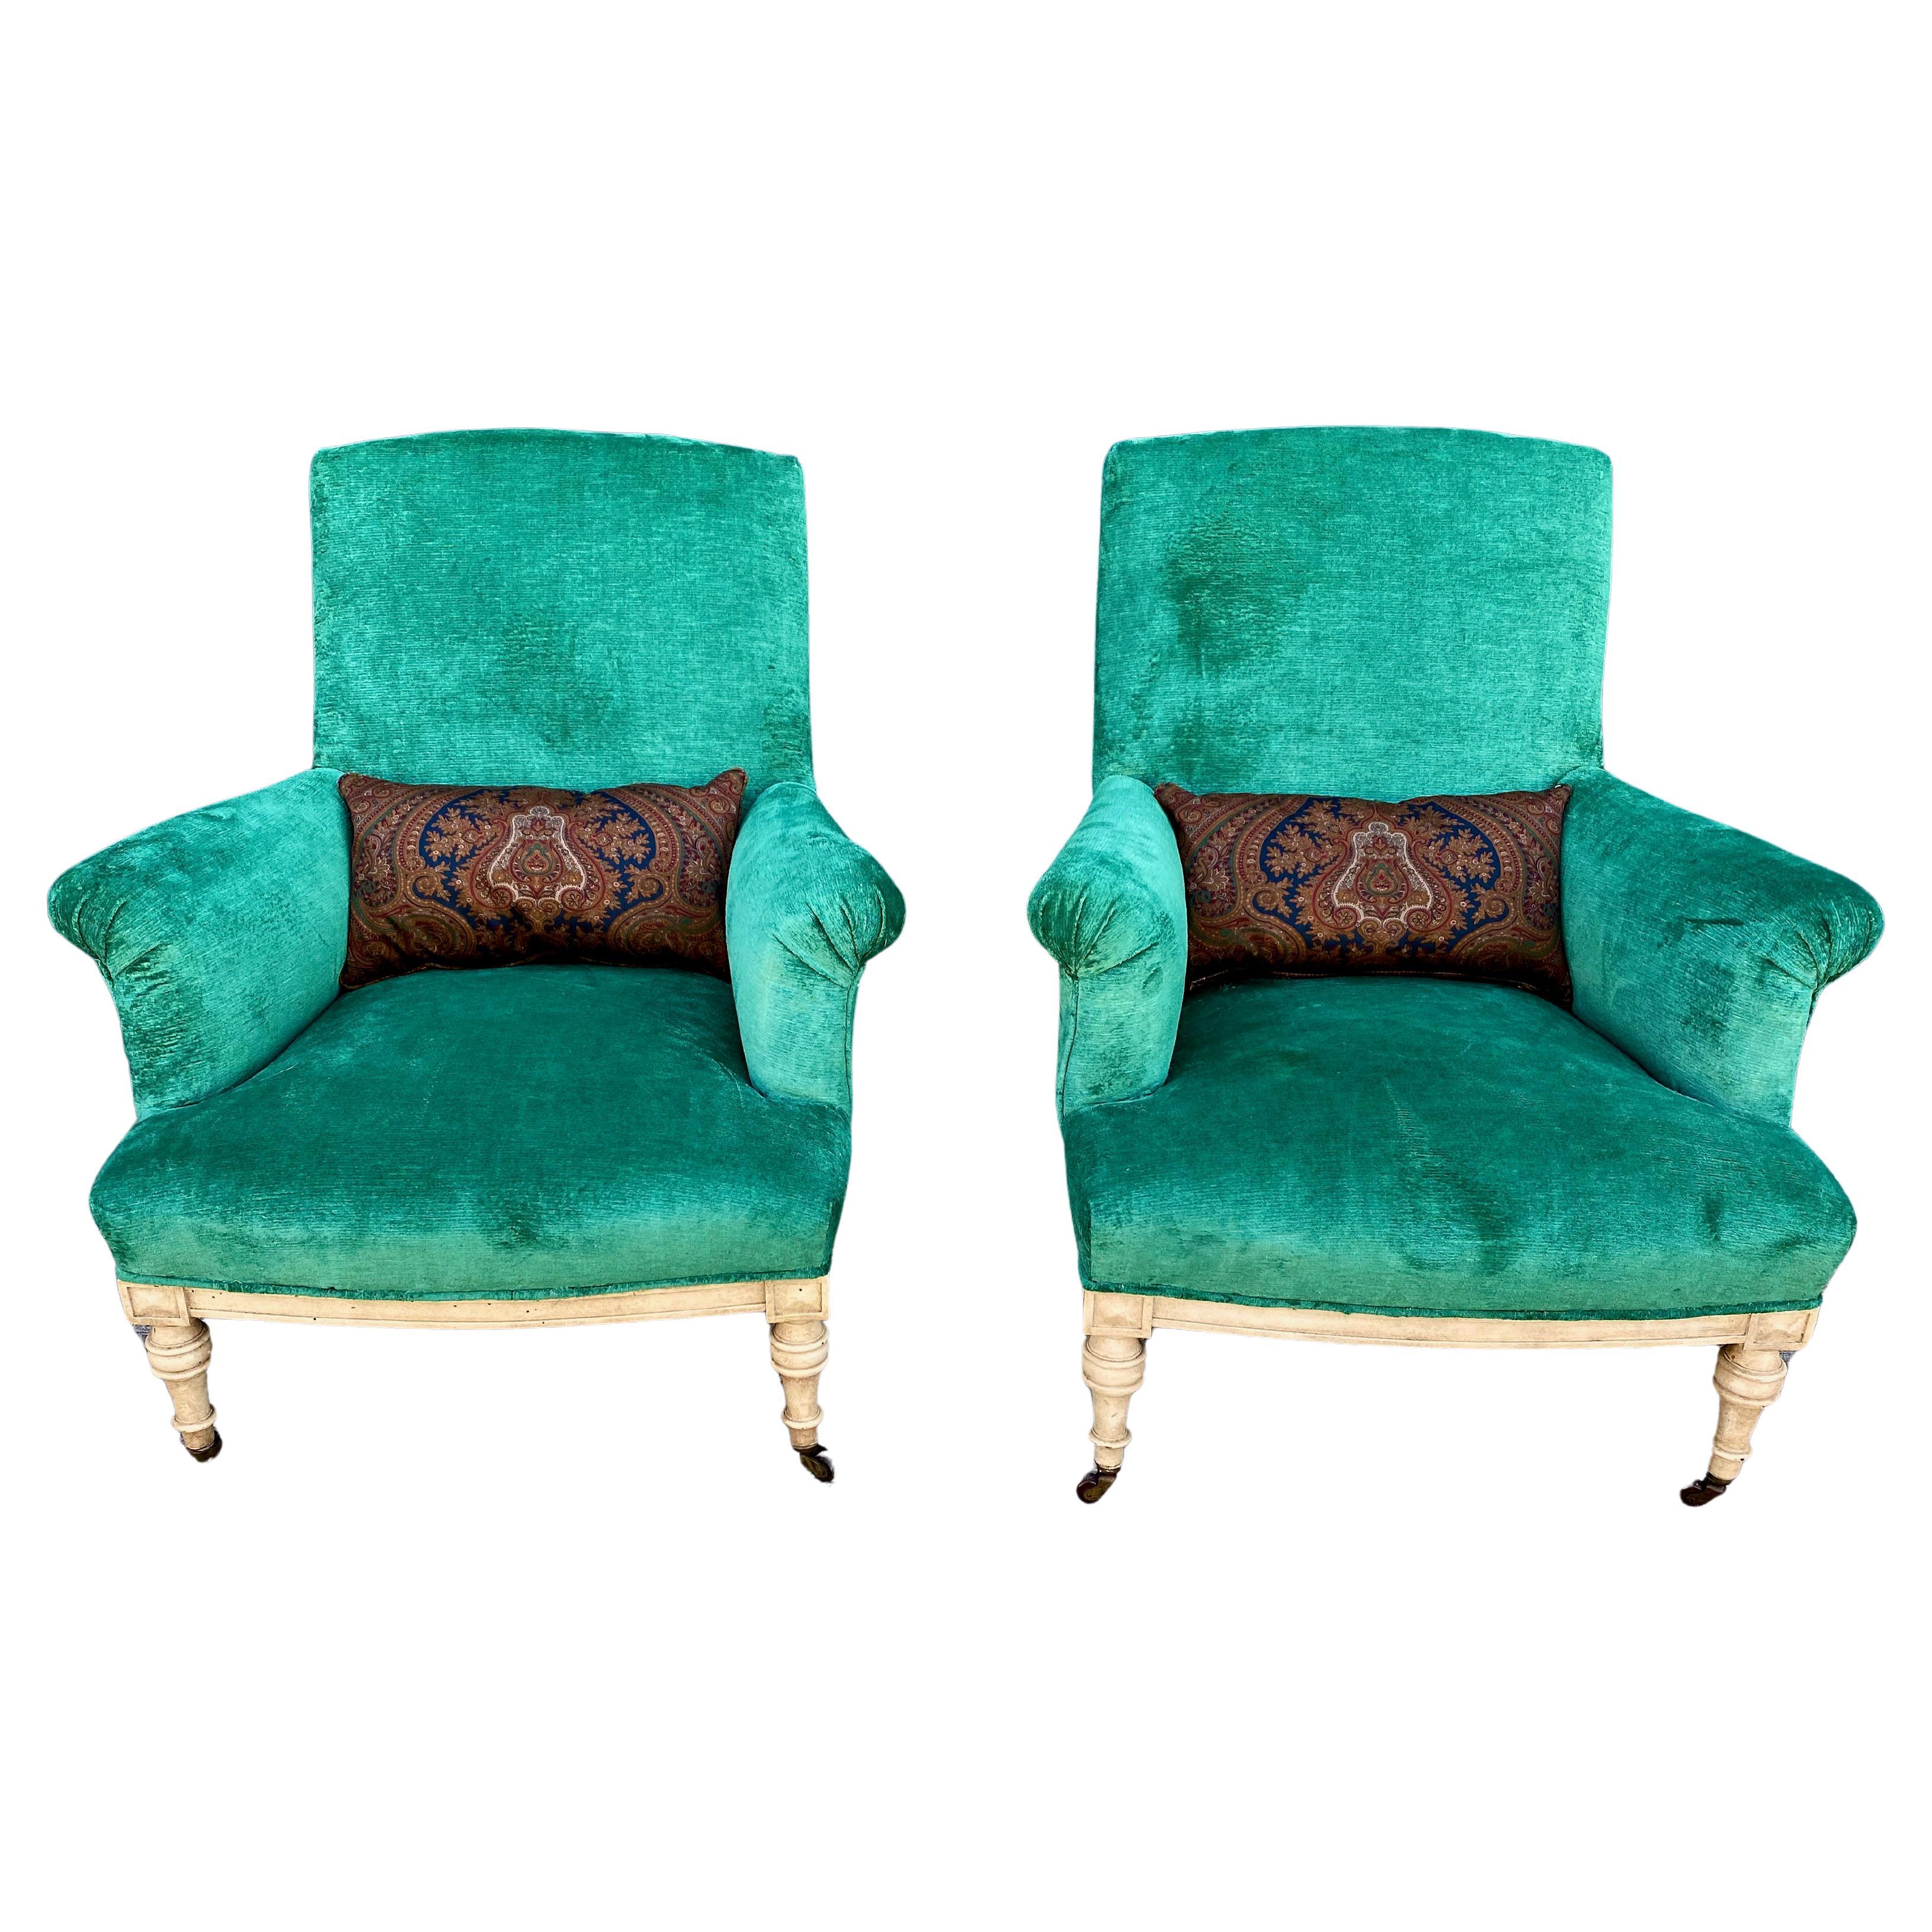 Il s'agit d'une paire très confortable et désirable de fauteuils club du milieu du 19e siècle dans le style de Howard & Sons. Ces chaises généreuses, de style maison de campagne anglaise très traditionnel, sont dotées de pieds tournés laqués ivoire